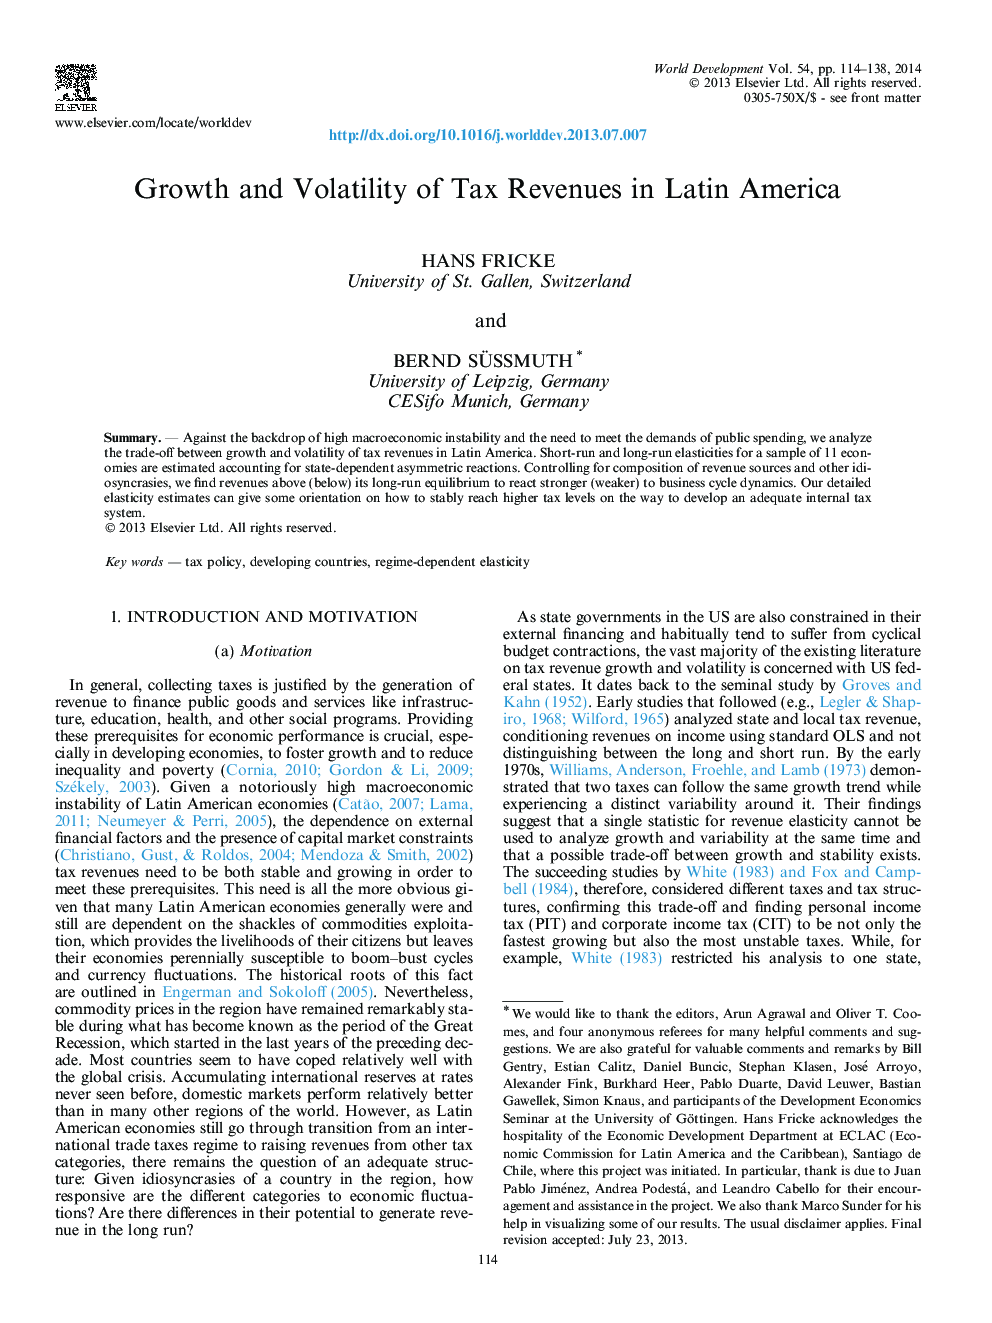 رشد و نوسان درآمدهای مالیاتی در آمریکای لاتین 